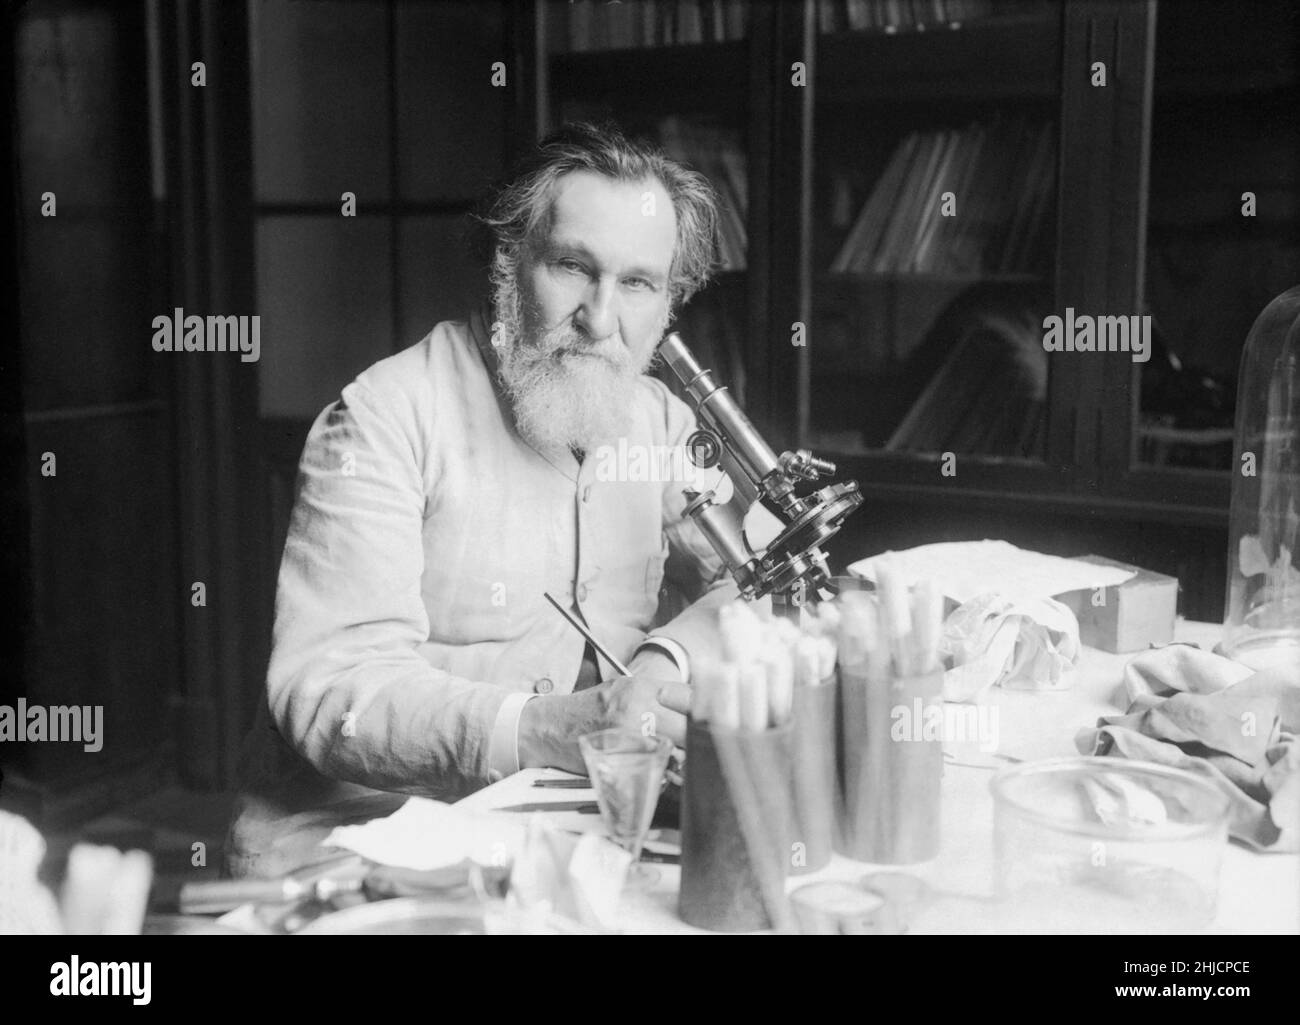 Ilya Ilyich Mechnikov, également connu sous le nom de √âlie Metchnikoff (1845 -1916), zoologiste russe connu pour ses recherches pionnières en immunologie.Lui et Paul Ehrlich ont reçu conjointement le Prix Nobel de physiologie ou médecine 1908.Il découvrit en 1882 un processus d'immunité appelé phagocytose et la cellule responsable de celui-ci, appelé phagocyte, en particulier le macrophage.Photographié dans son laboratoire, 1913. Banque D'Images